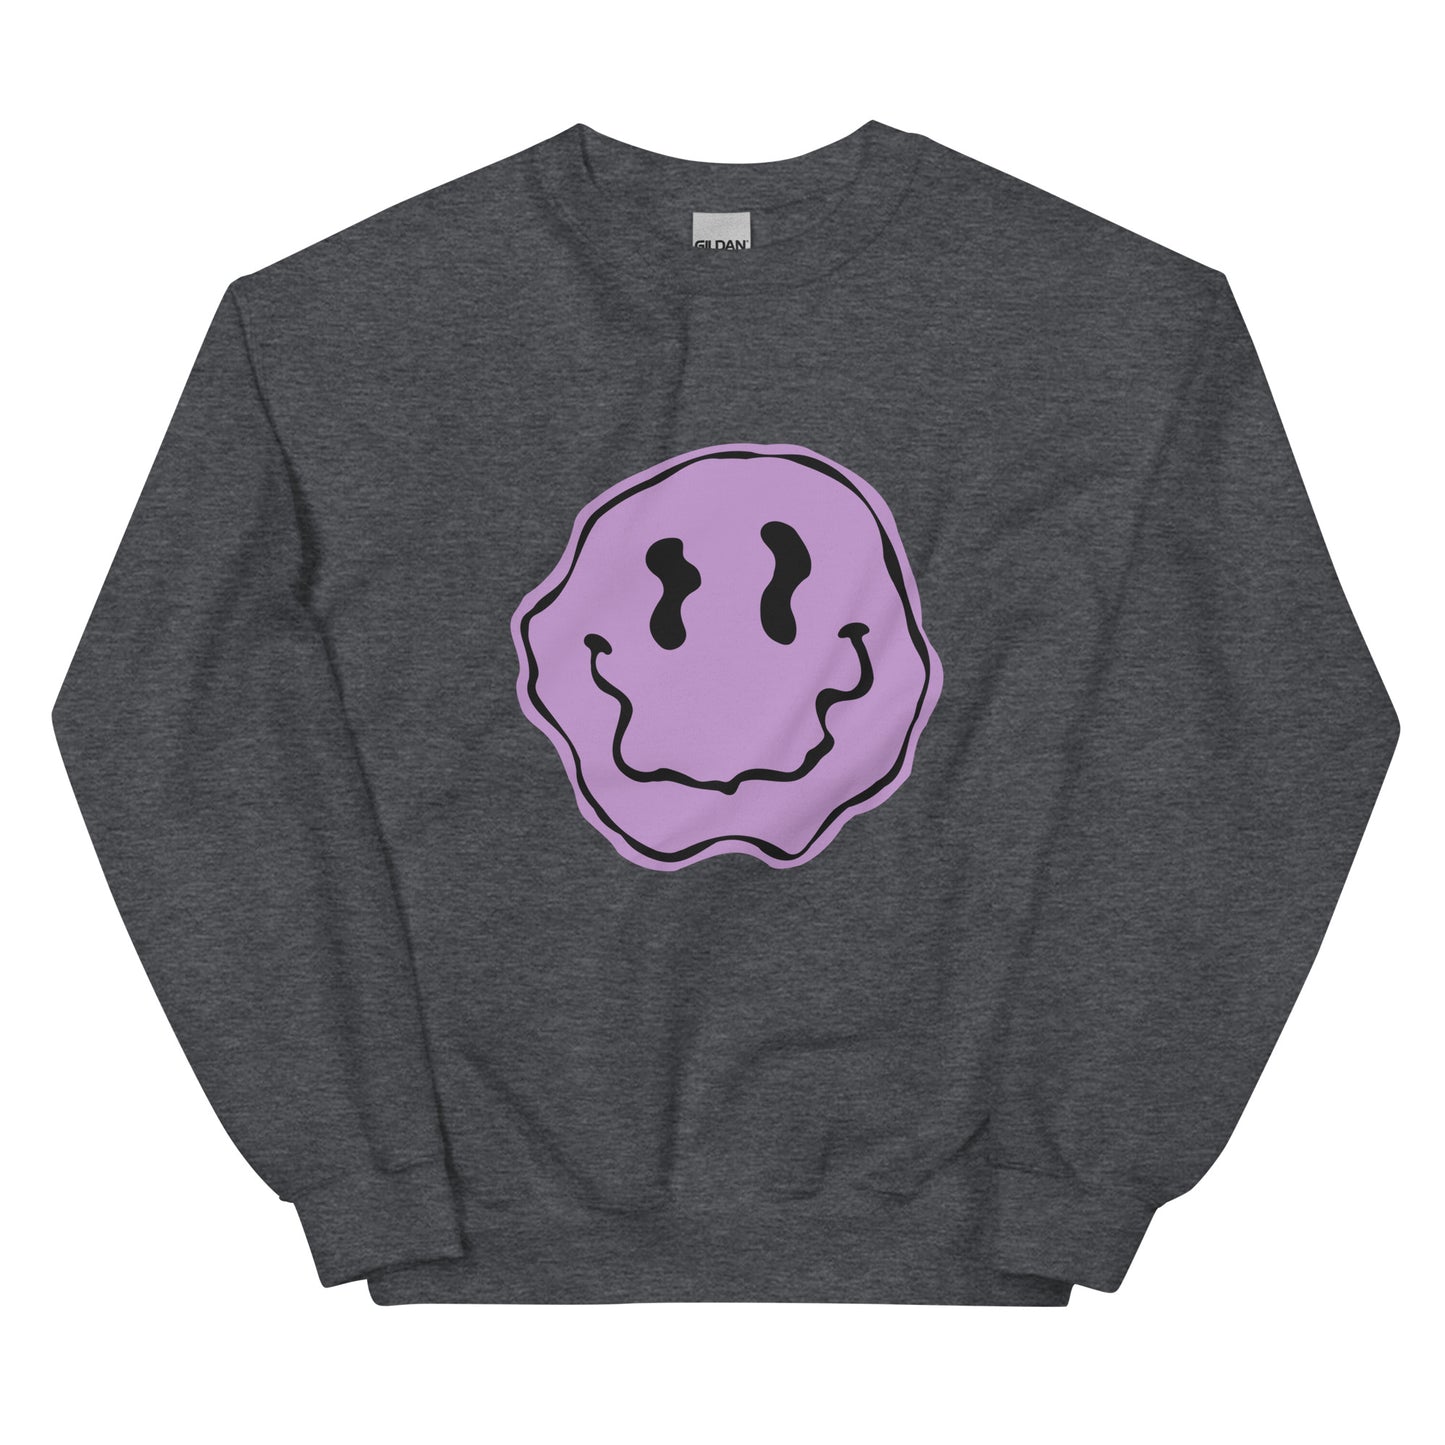 Purple Smiley Sweatshirt